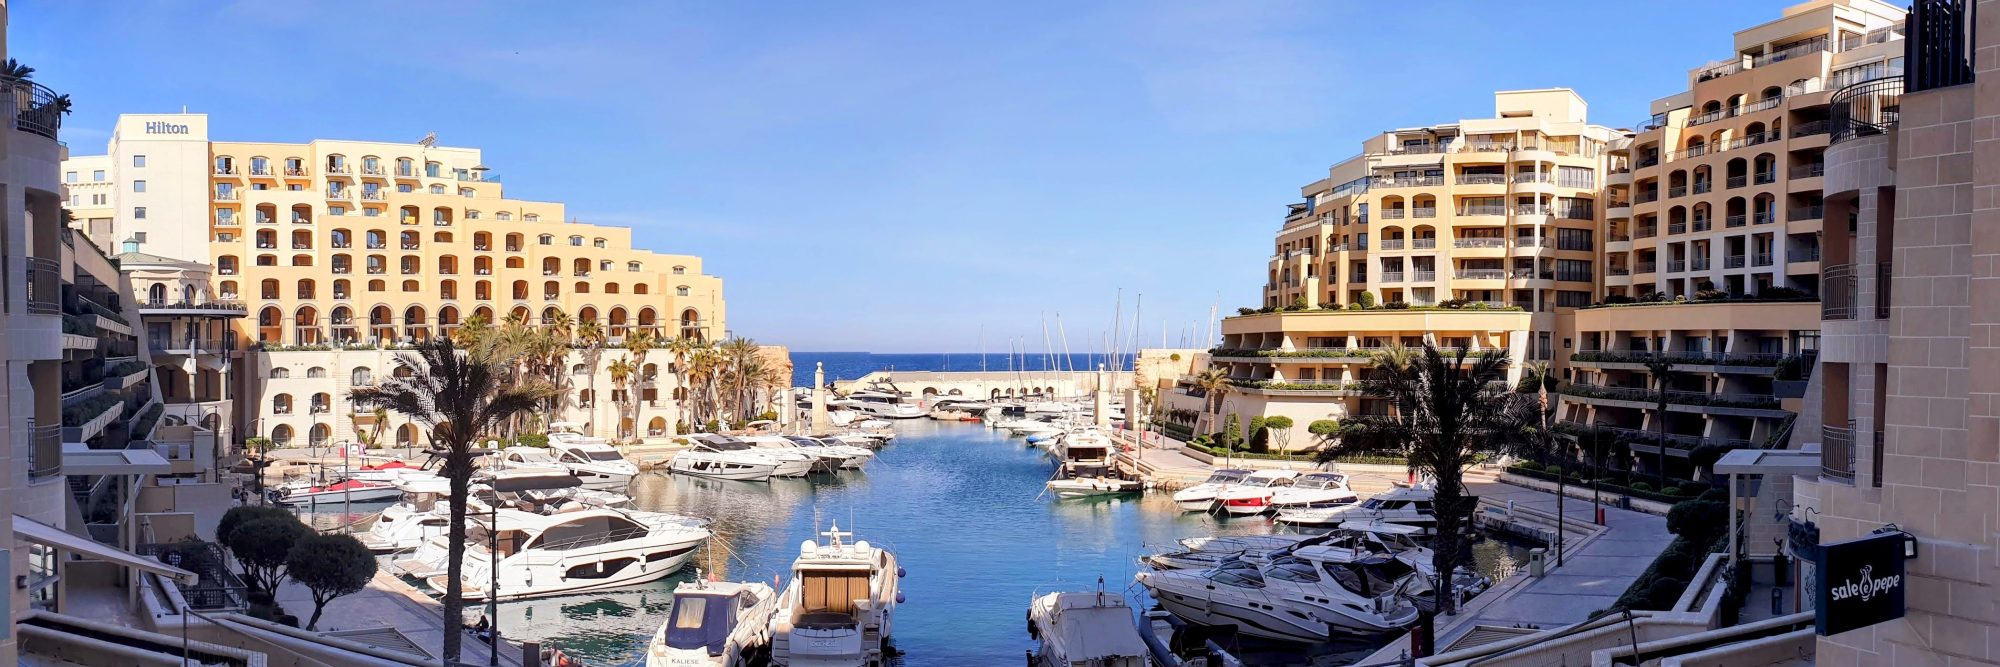 12 vinkkejä sopivan majoituksen löytämiseksi - Hilton, Malta, Portomaso